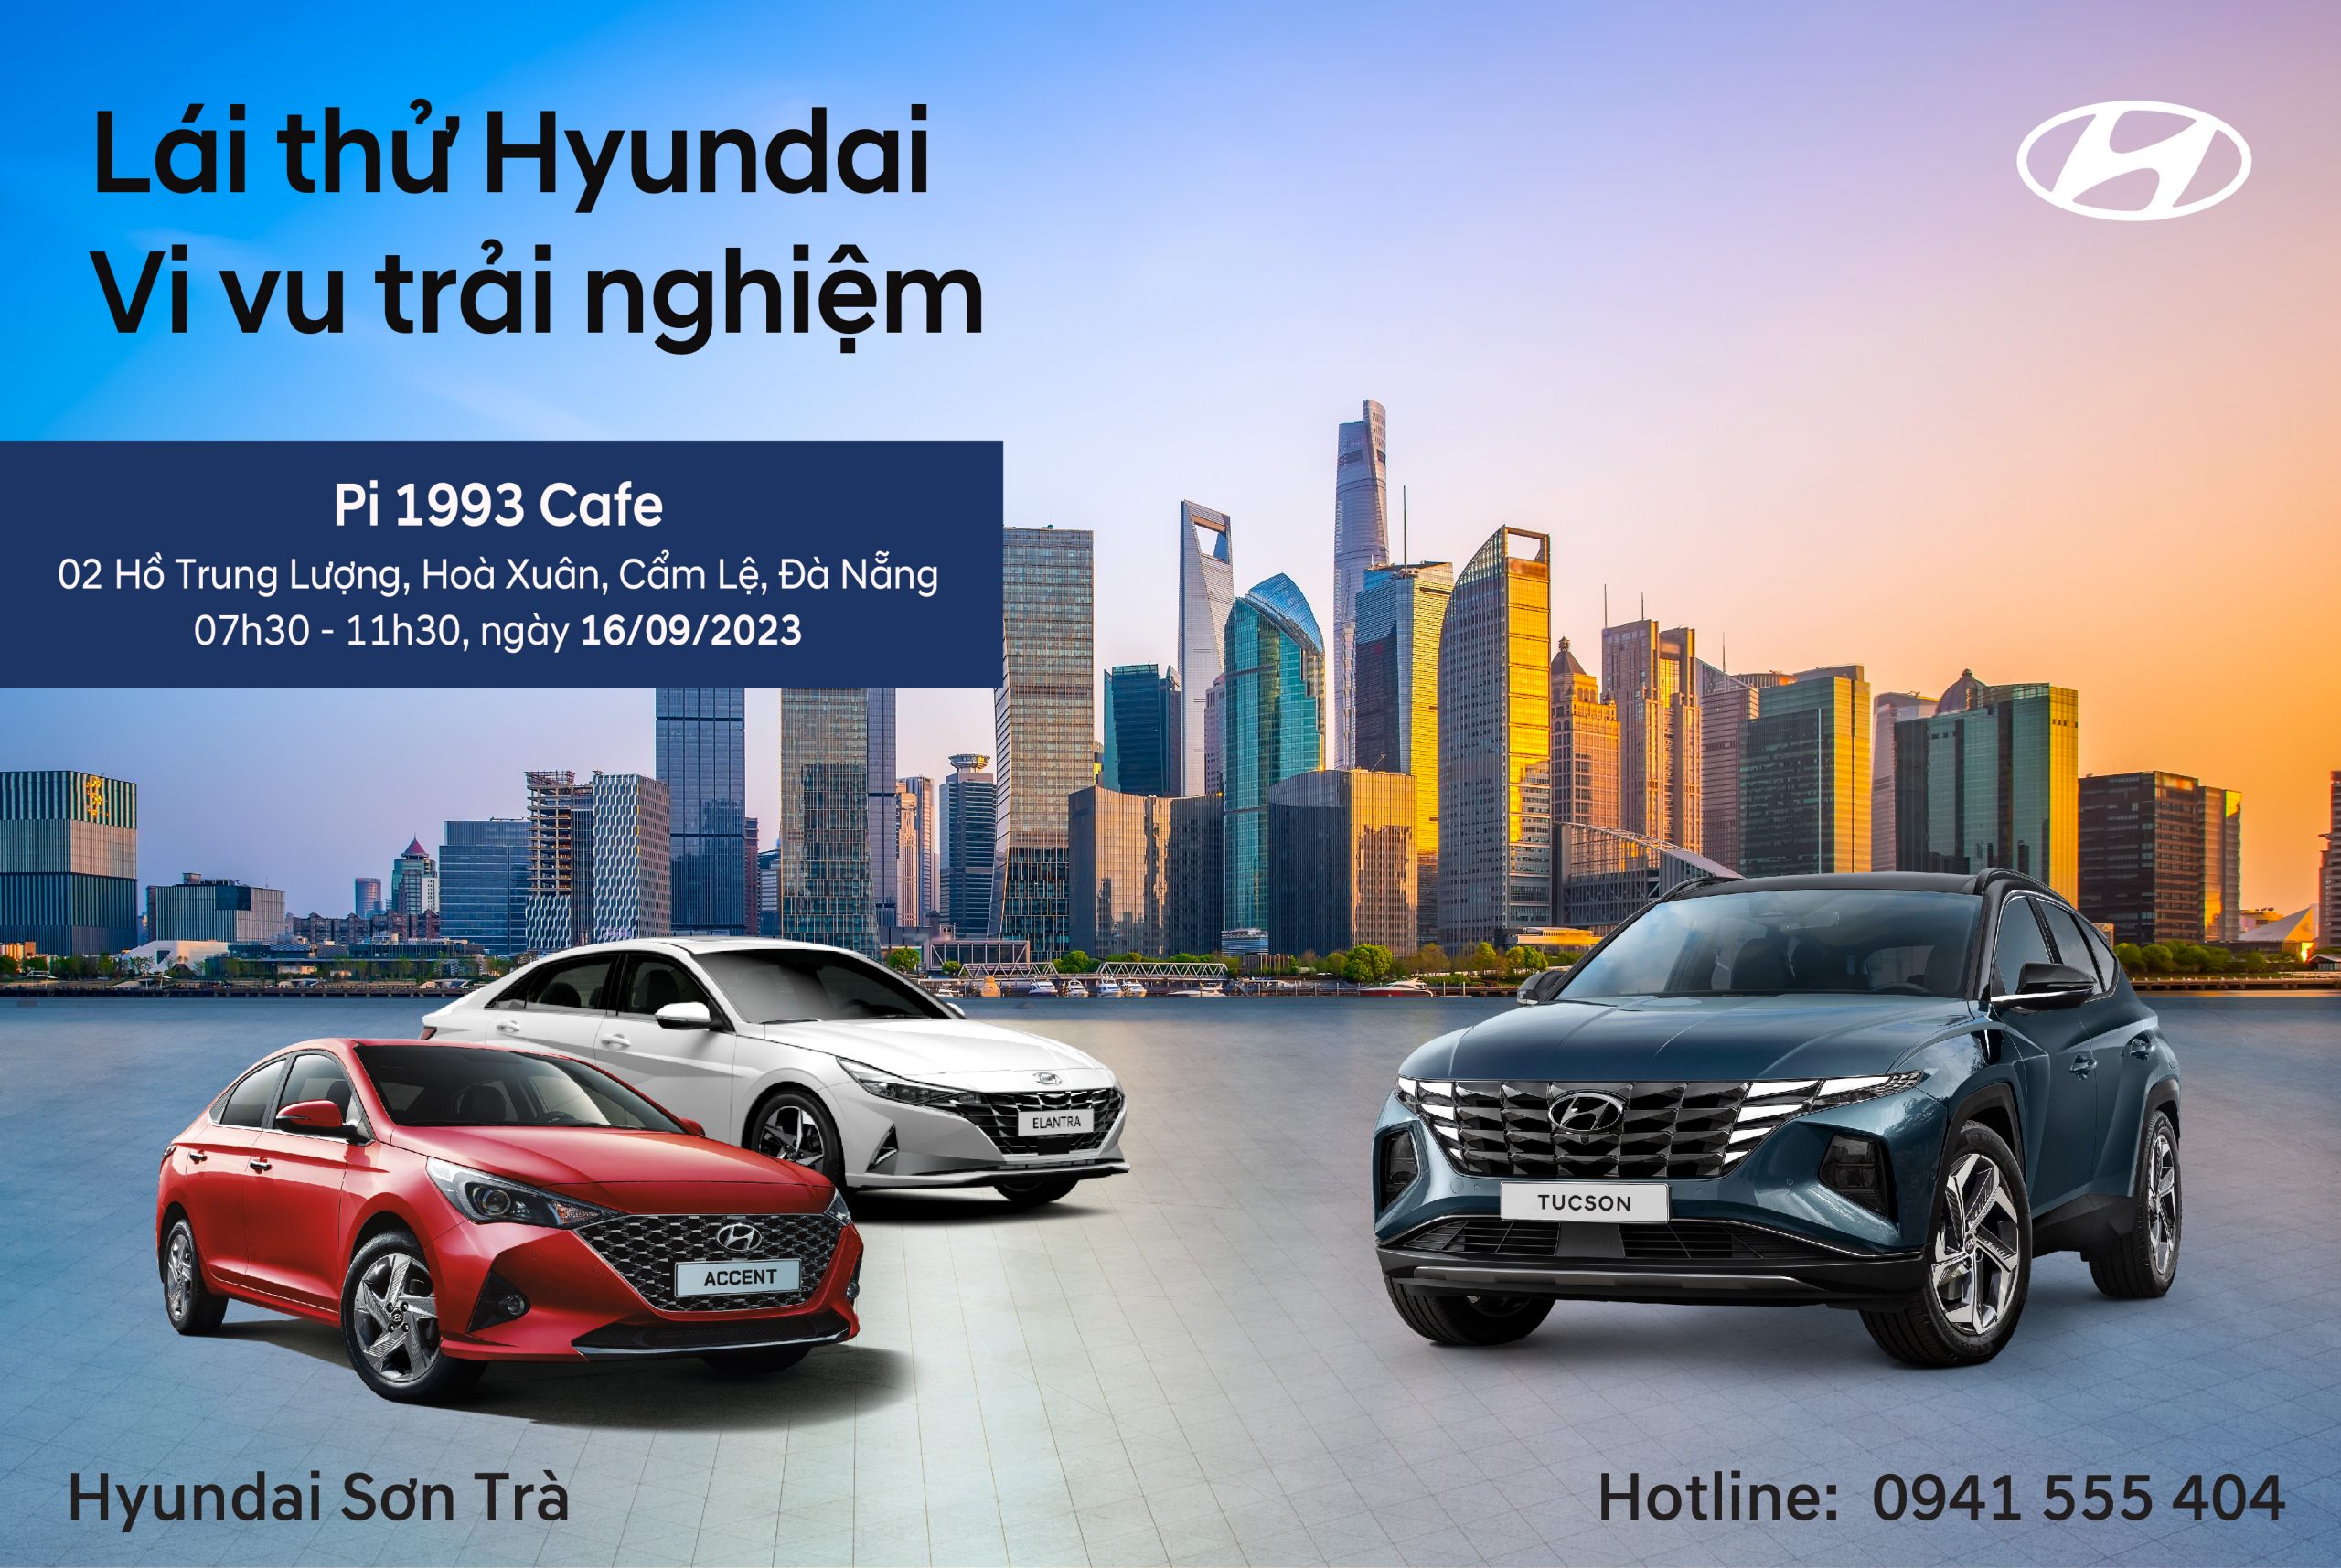 Lái thử & trải nghiệm các dòng xe Hyundai – Hyundai Sơn Trà